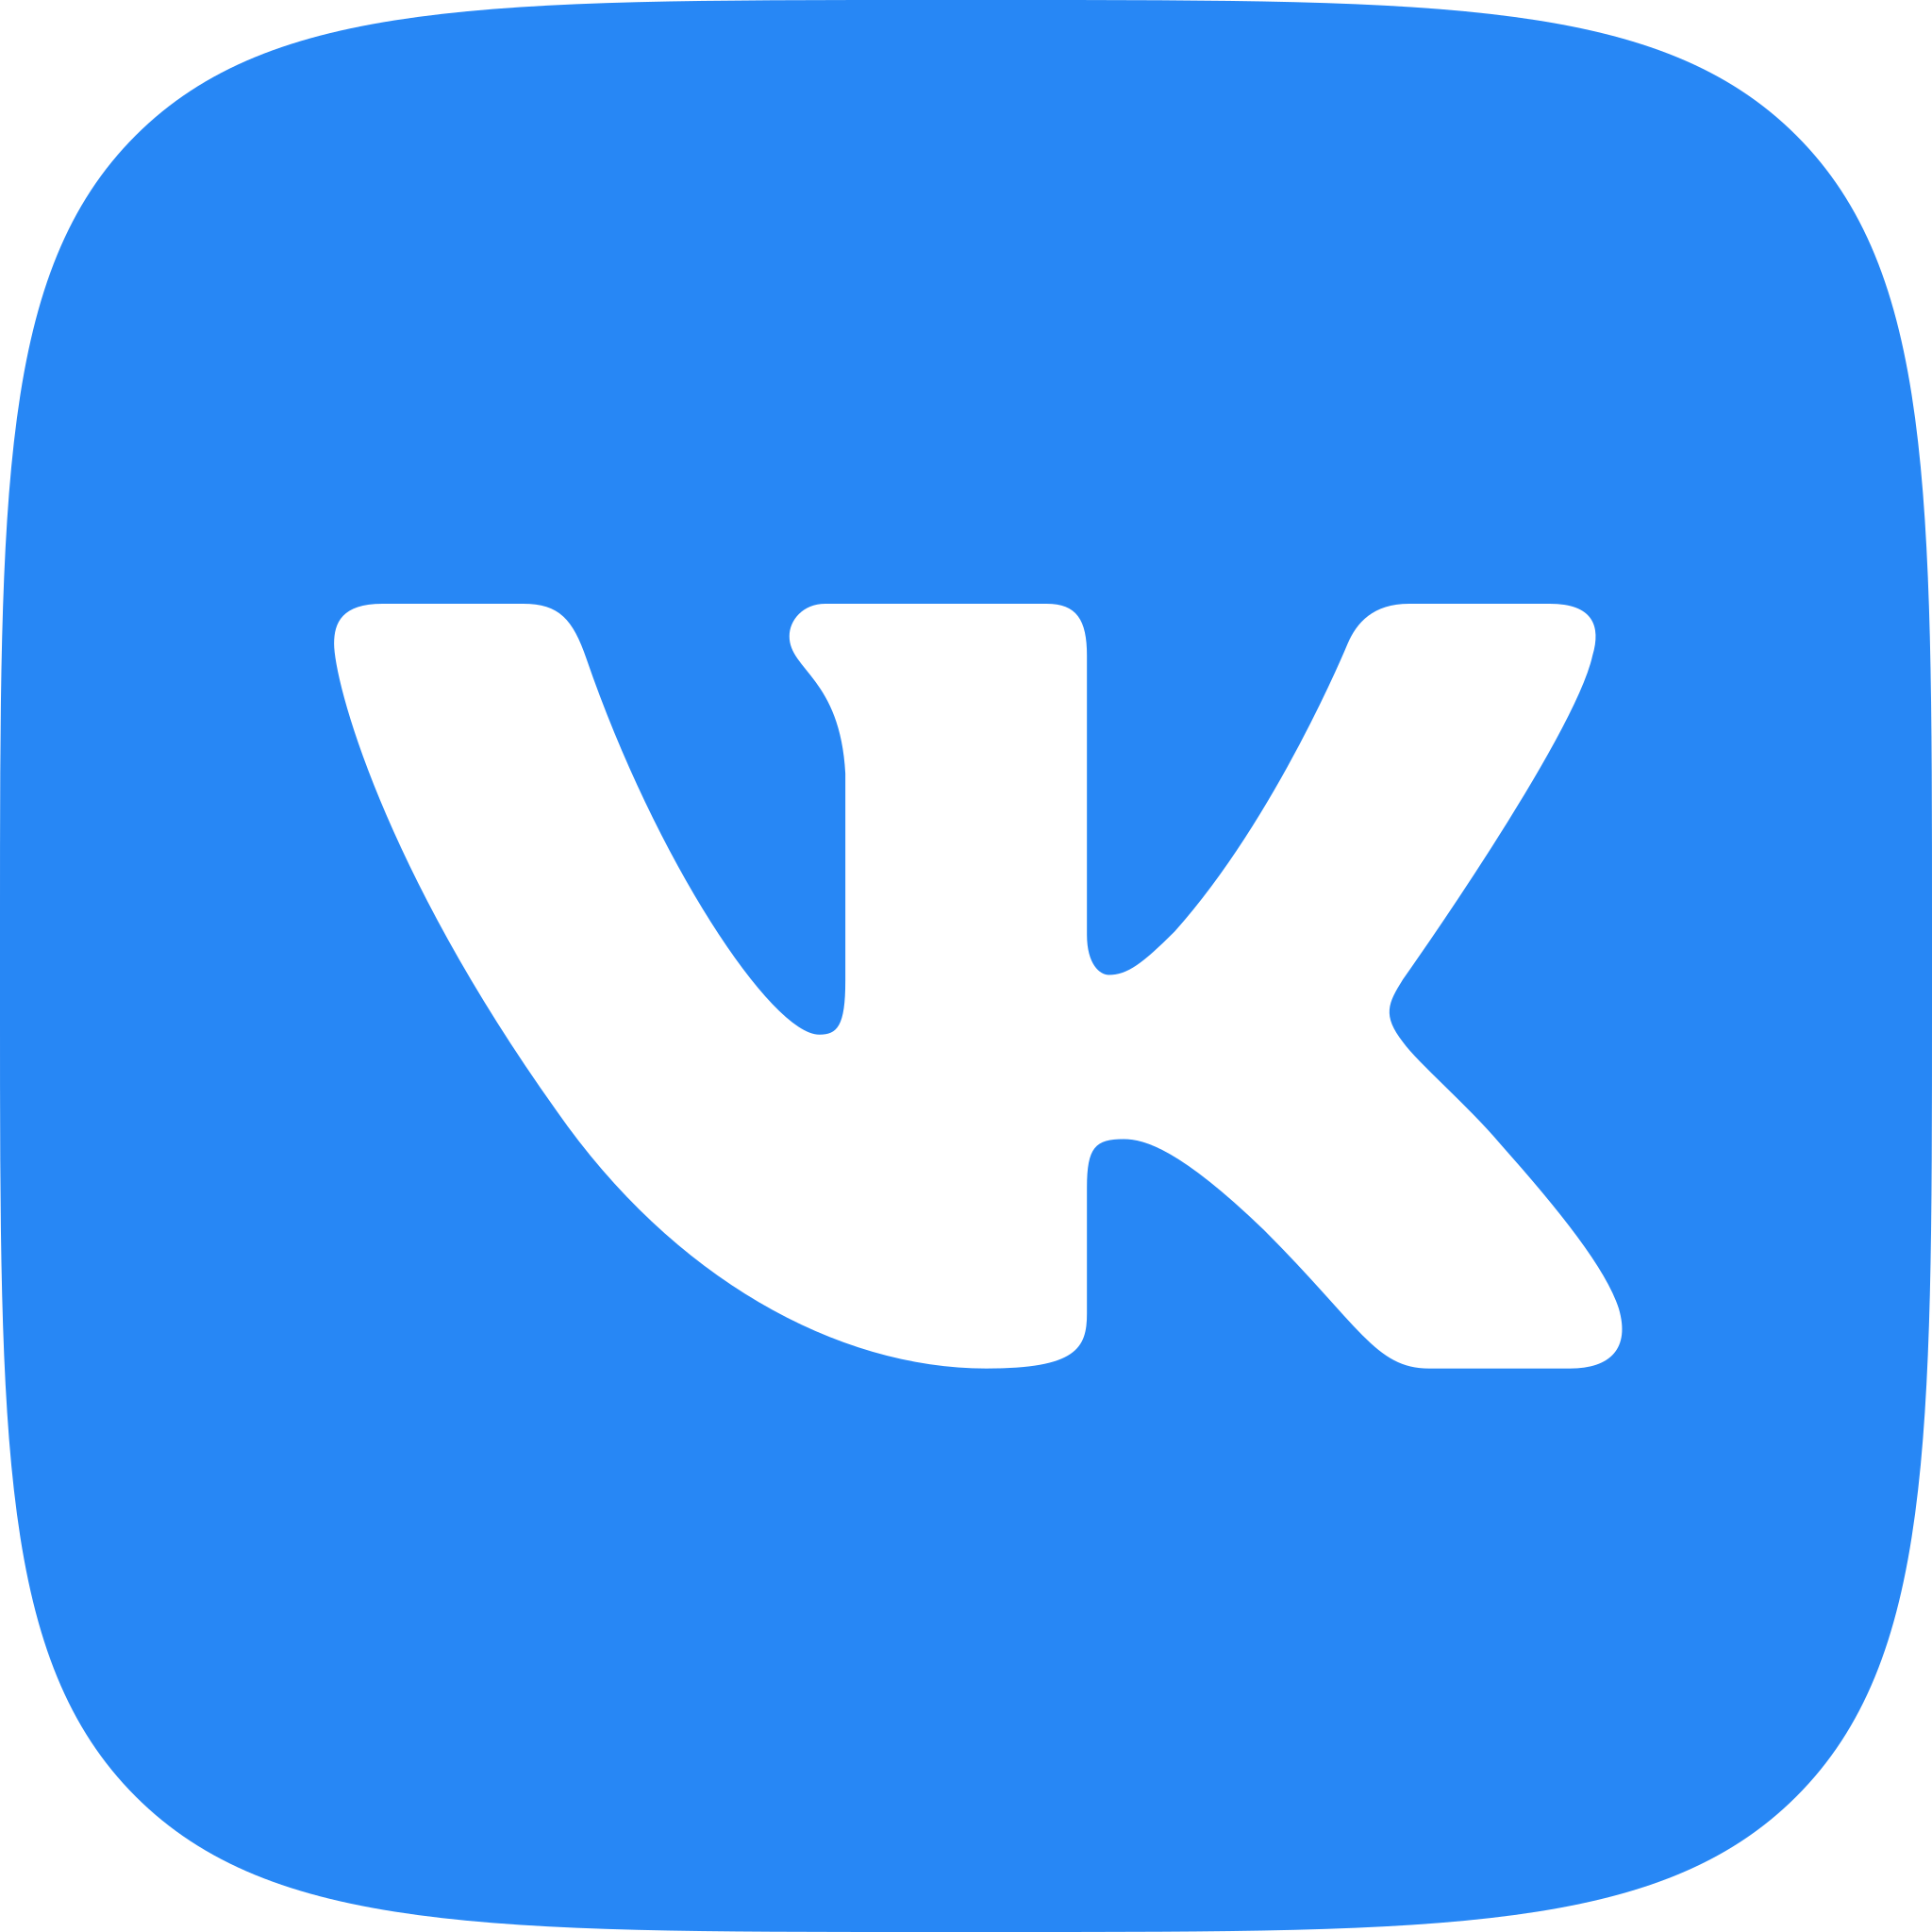 VK_Compact_Logo.svg